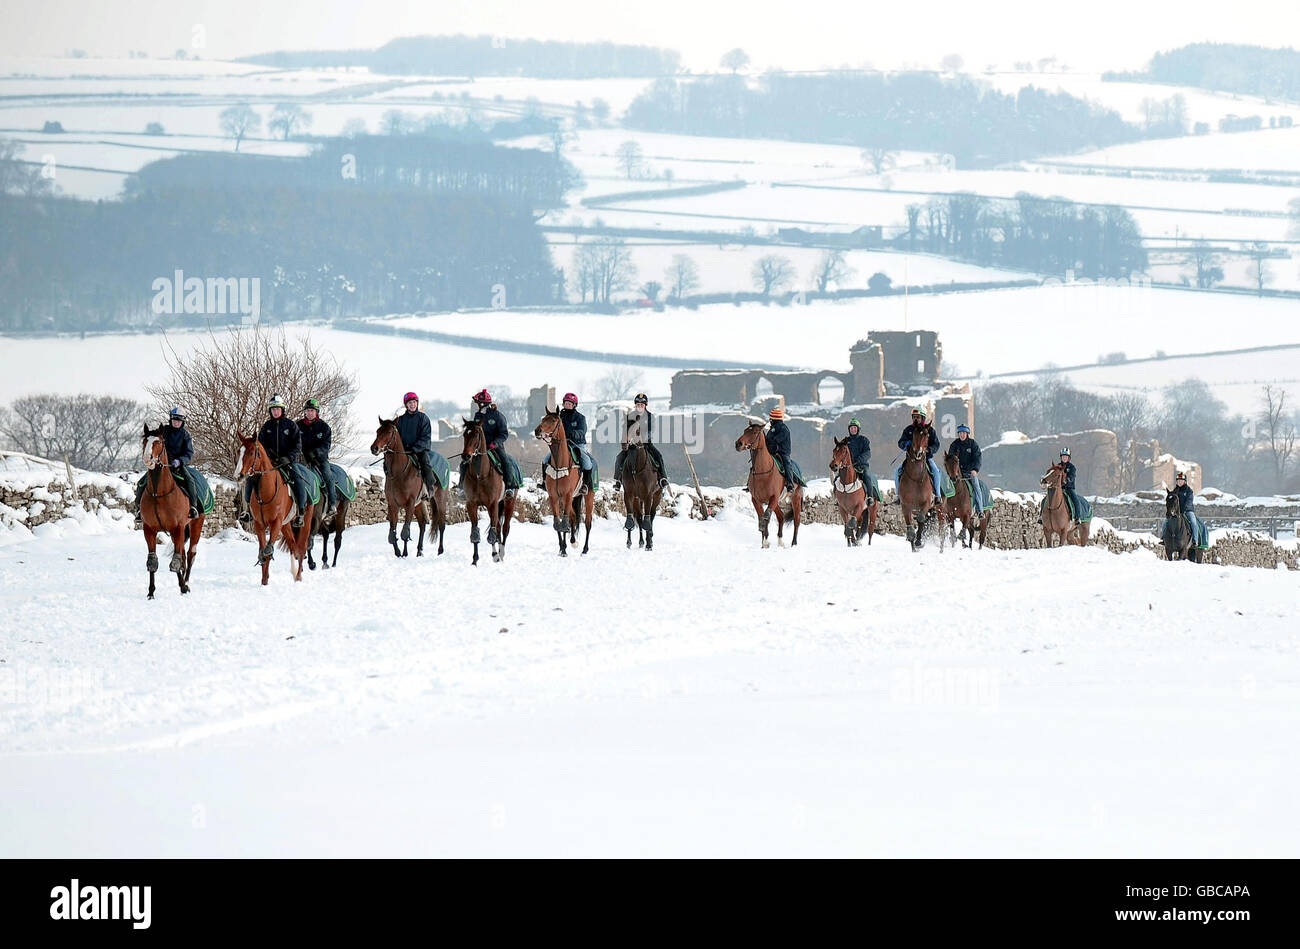 Les courses de gazon étant de nouveau abandonnées au Royaume-Uni en raison de chutes de neige abondantes, les galops de Middleham, dans le North Yorkshire, étaient occupés par des chevaux de course qui s'exerçaient dans de la neige profonde. Banque D'Images